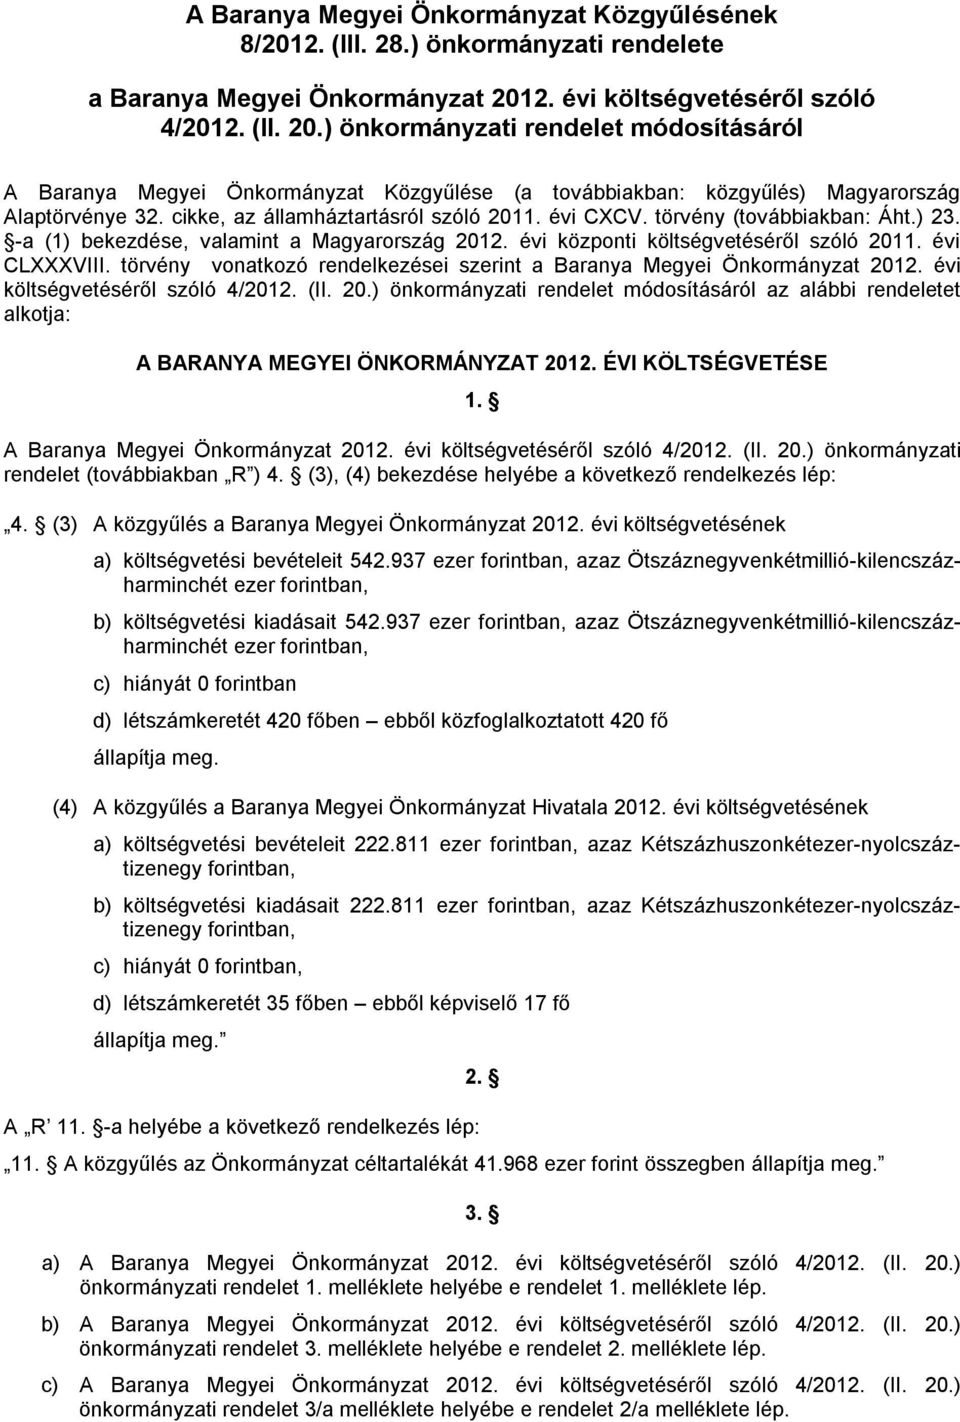 törvény (továbbiakban: Áht.) 23. -a (1) bekezdése, valamint a Magyarország központi költségvetéséről szóló 2011. évi CLXXXVIII.